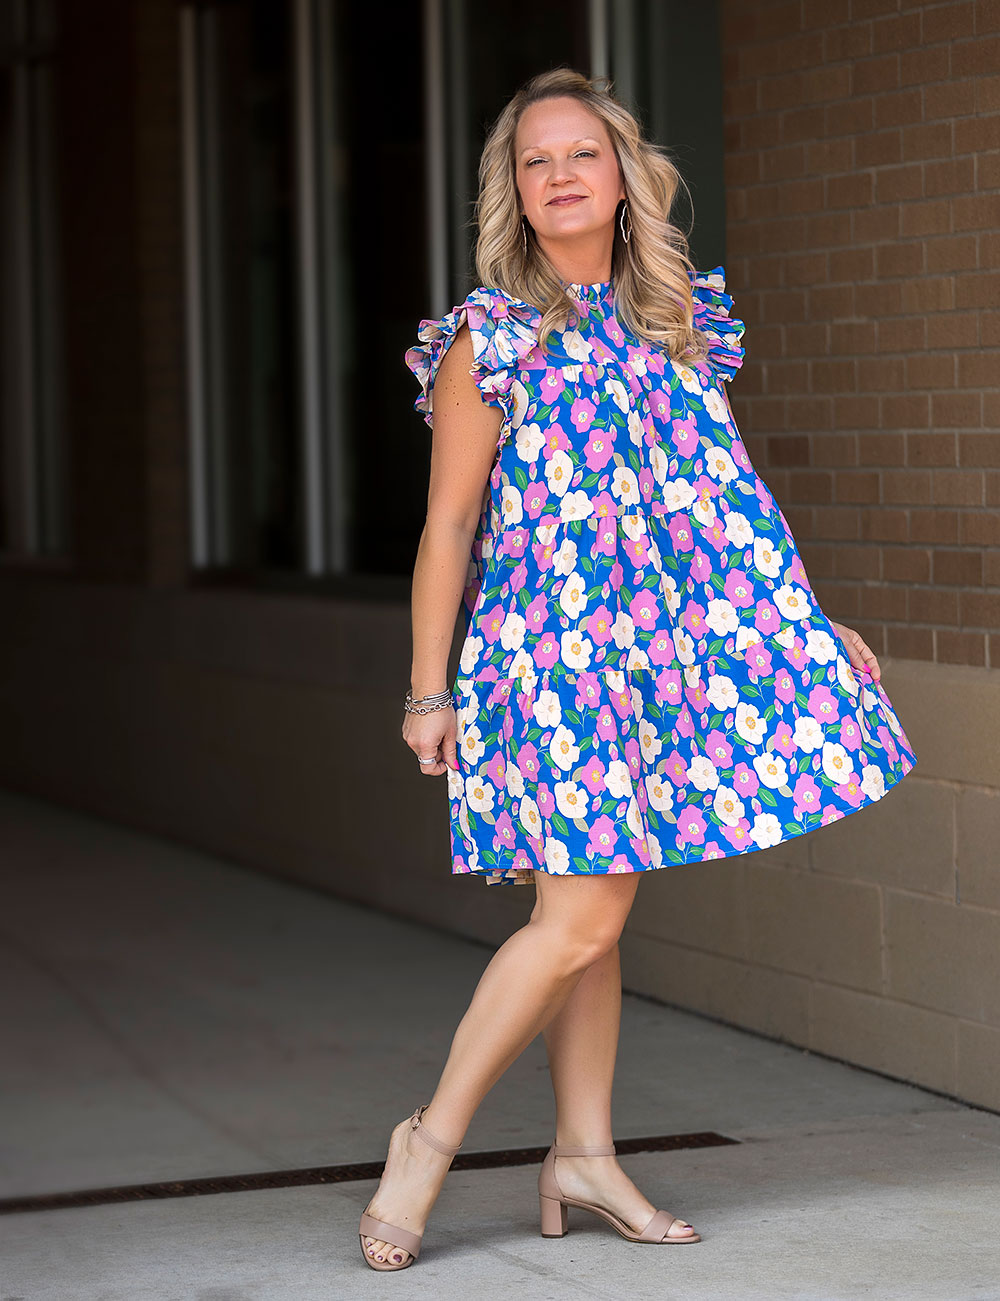 On model Jodi Stevens:
Floral tiered dress, $45.99